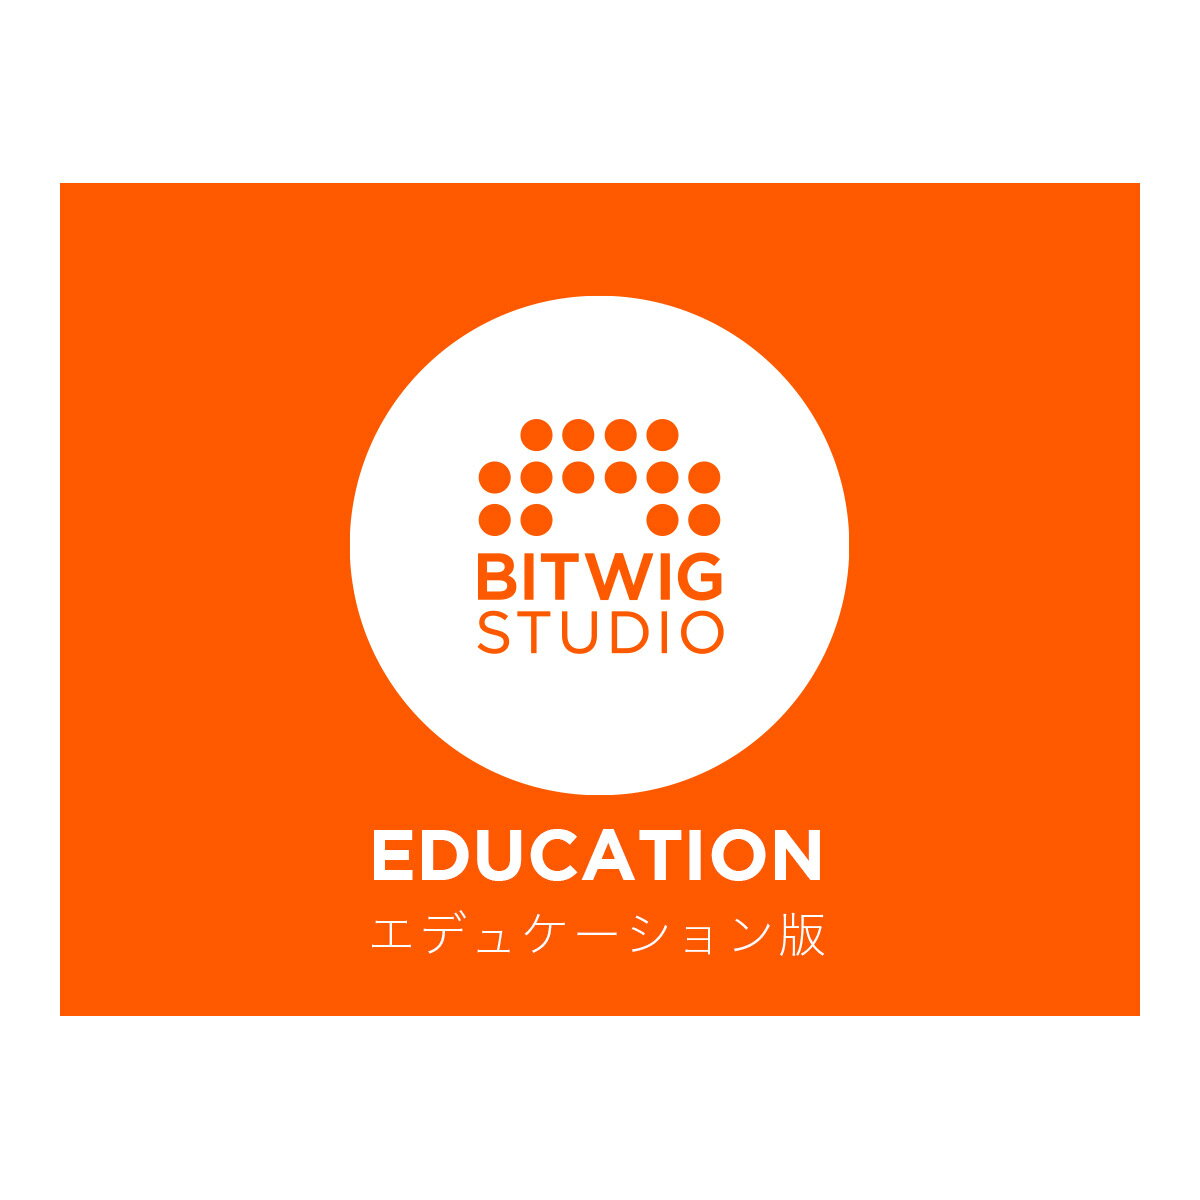 BITWIG Bitwig Studio アカデミック版 (エデュケーション版) [最新バージョン5.1] ビットウィグ [メール納品 代引き…